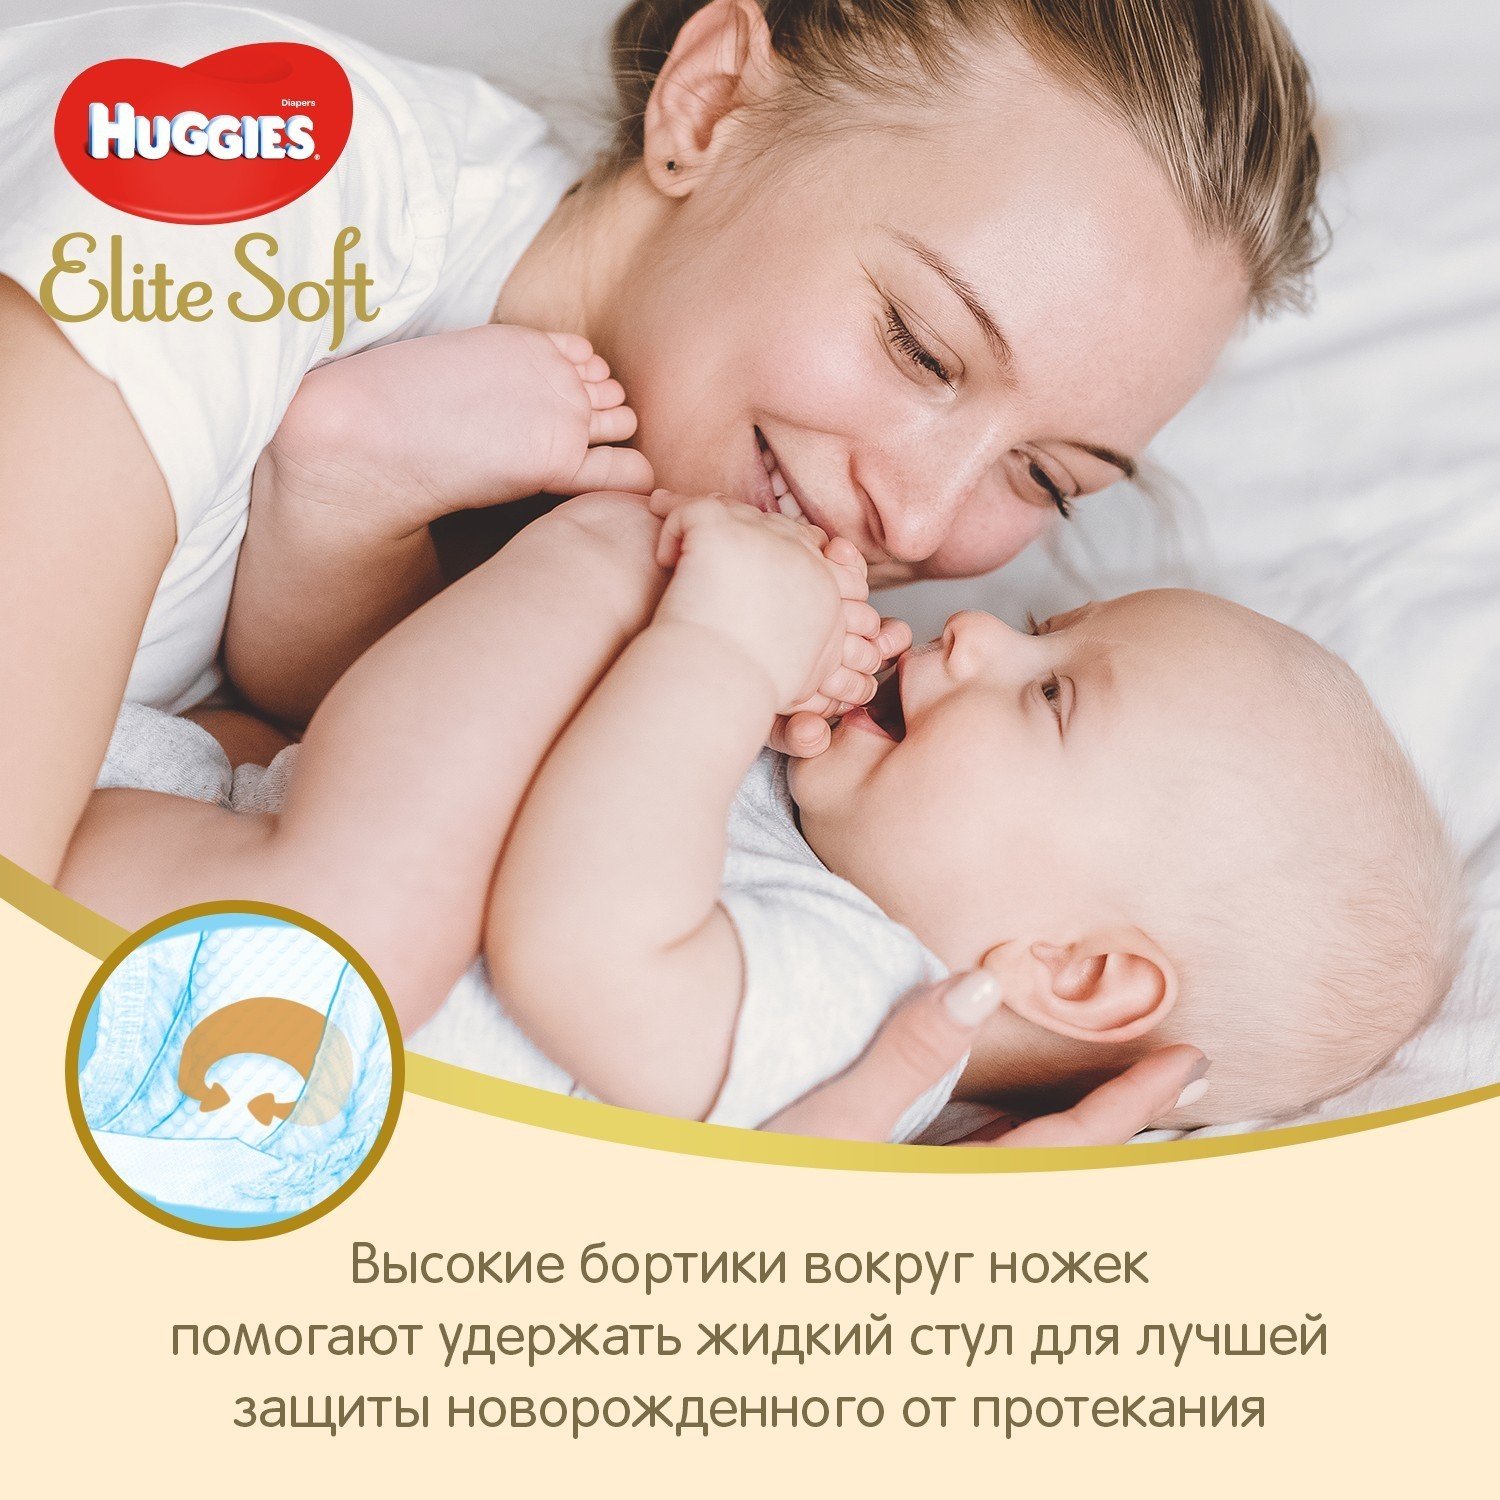 Подгузники Huggies Elite Soft для новорожденных 1 3-5кг 50шт